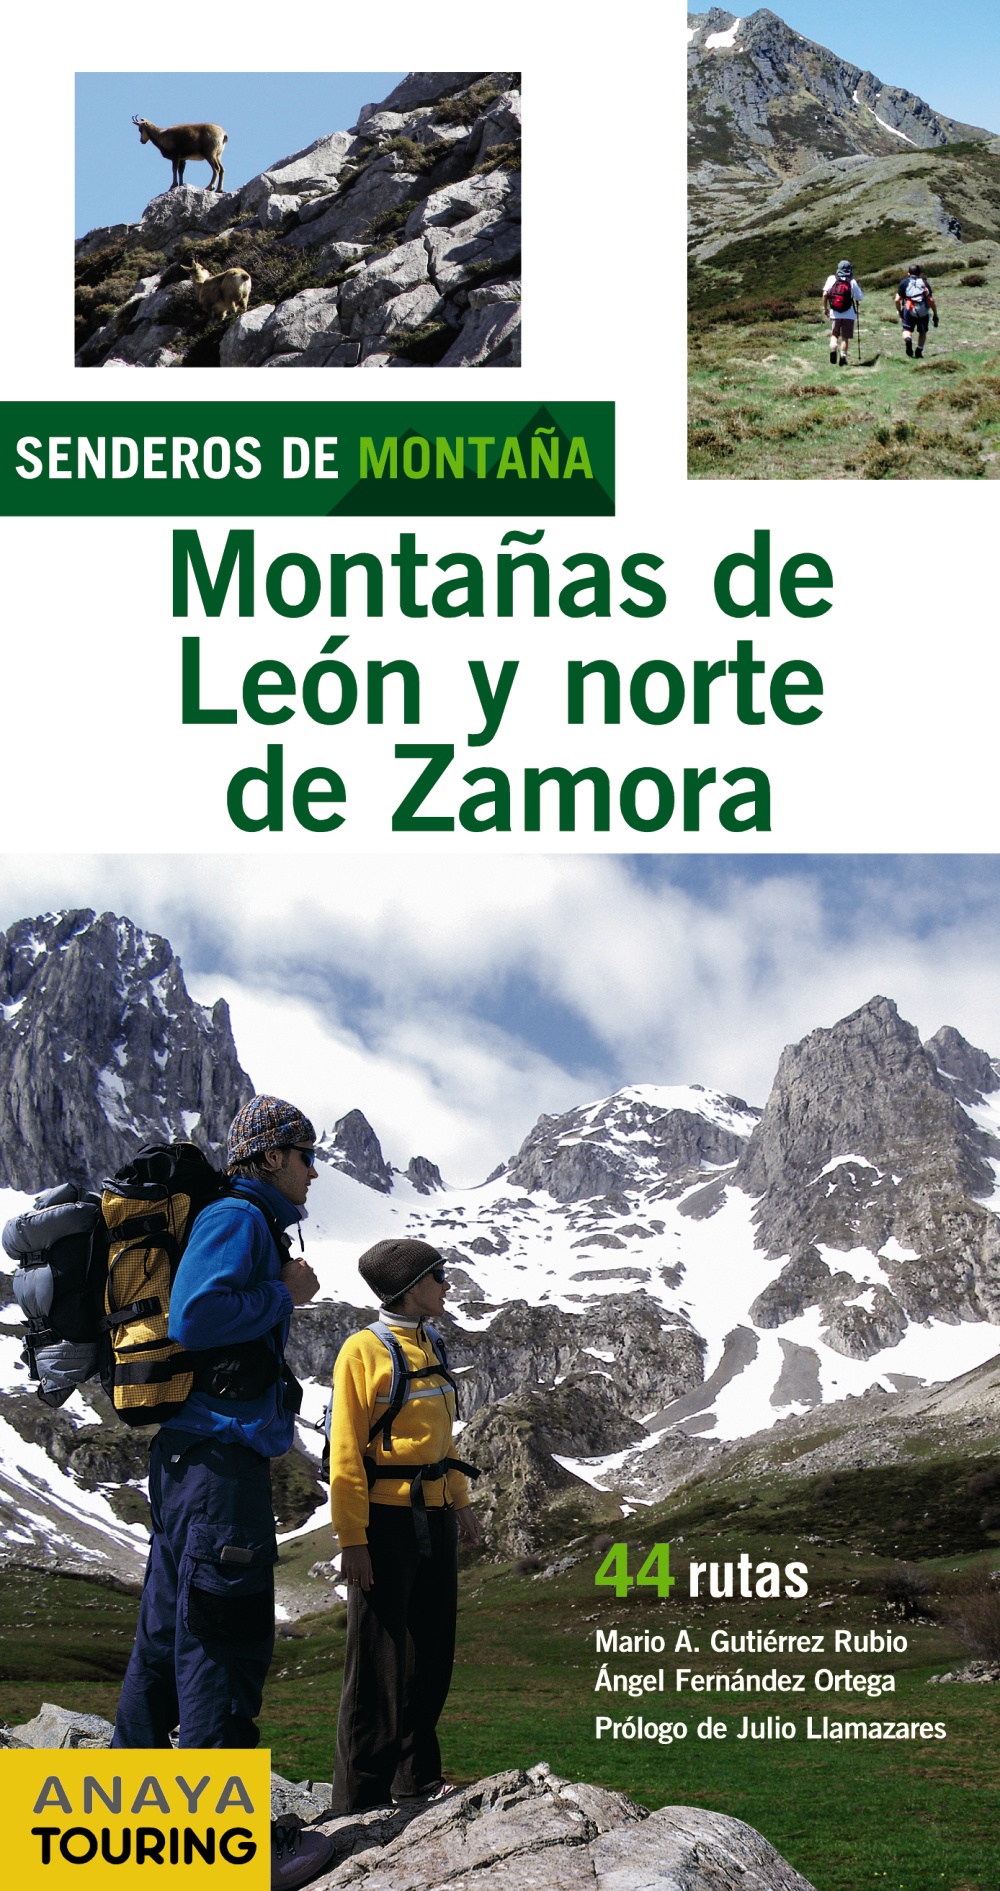 Senderos de Montaña, Montañas de León y norte de Zamora